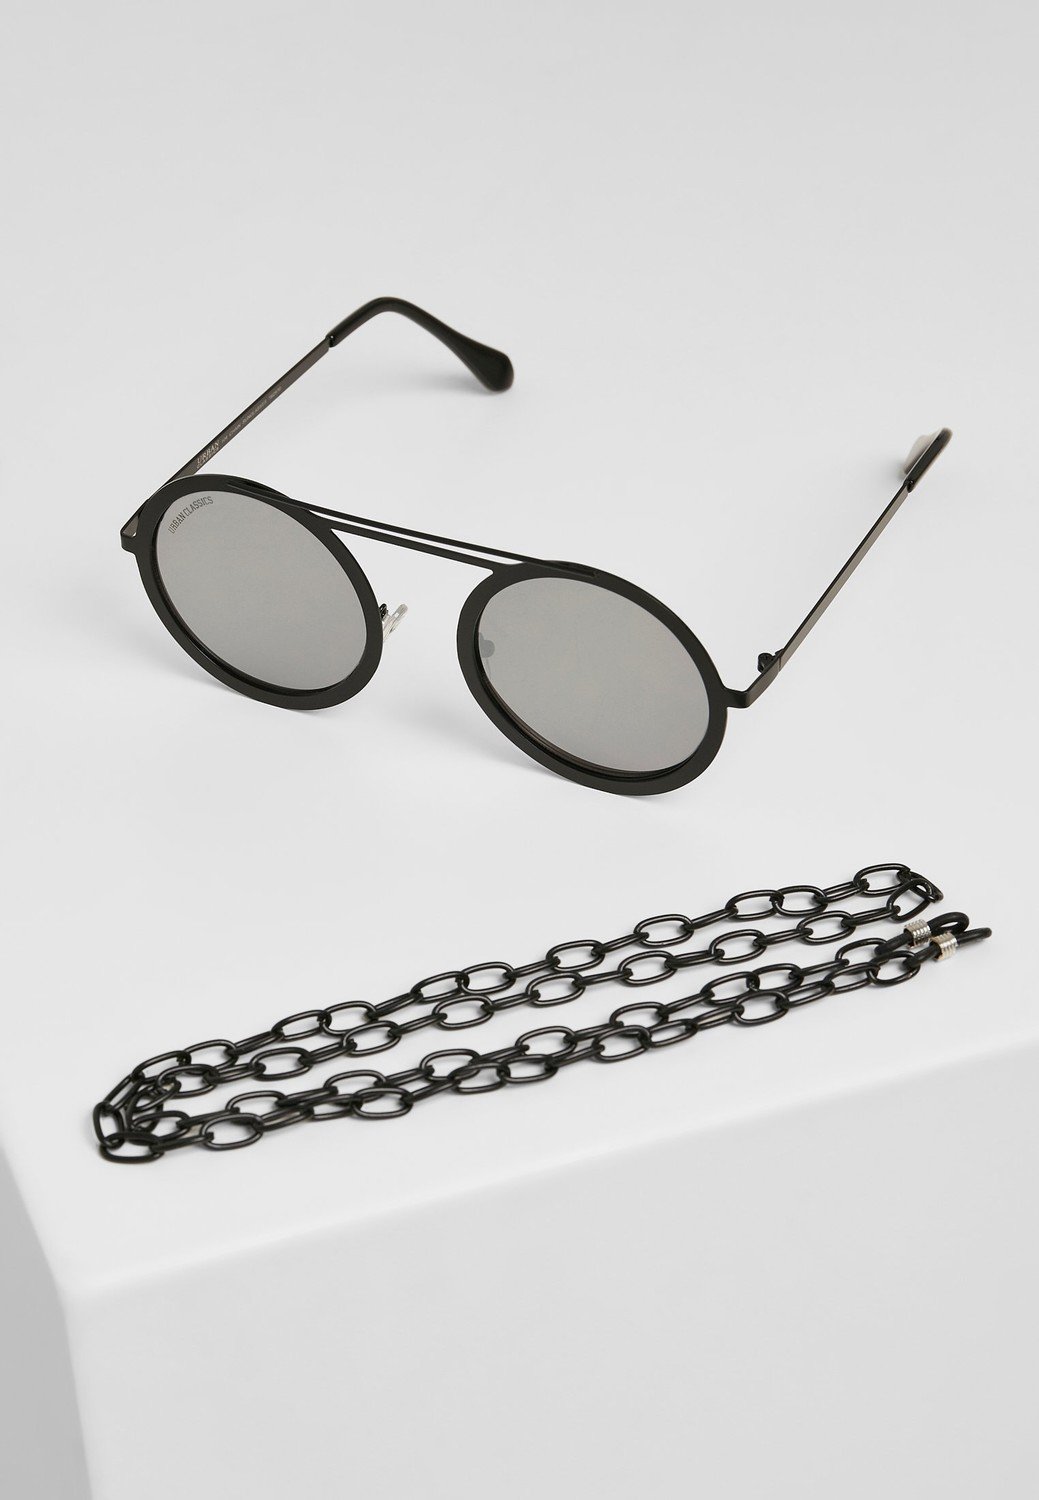 104 Řetízkové sluneční brýle stříbrné zrcadlo/černé